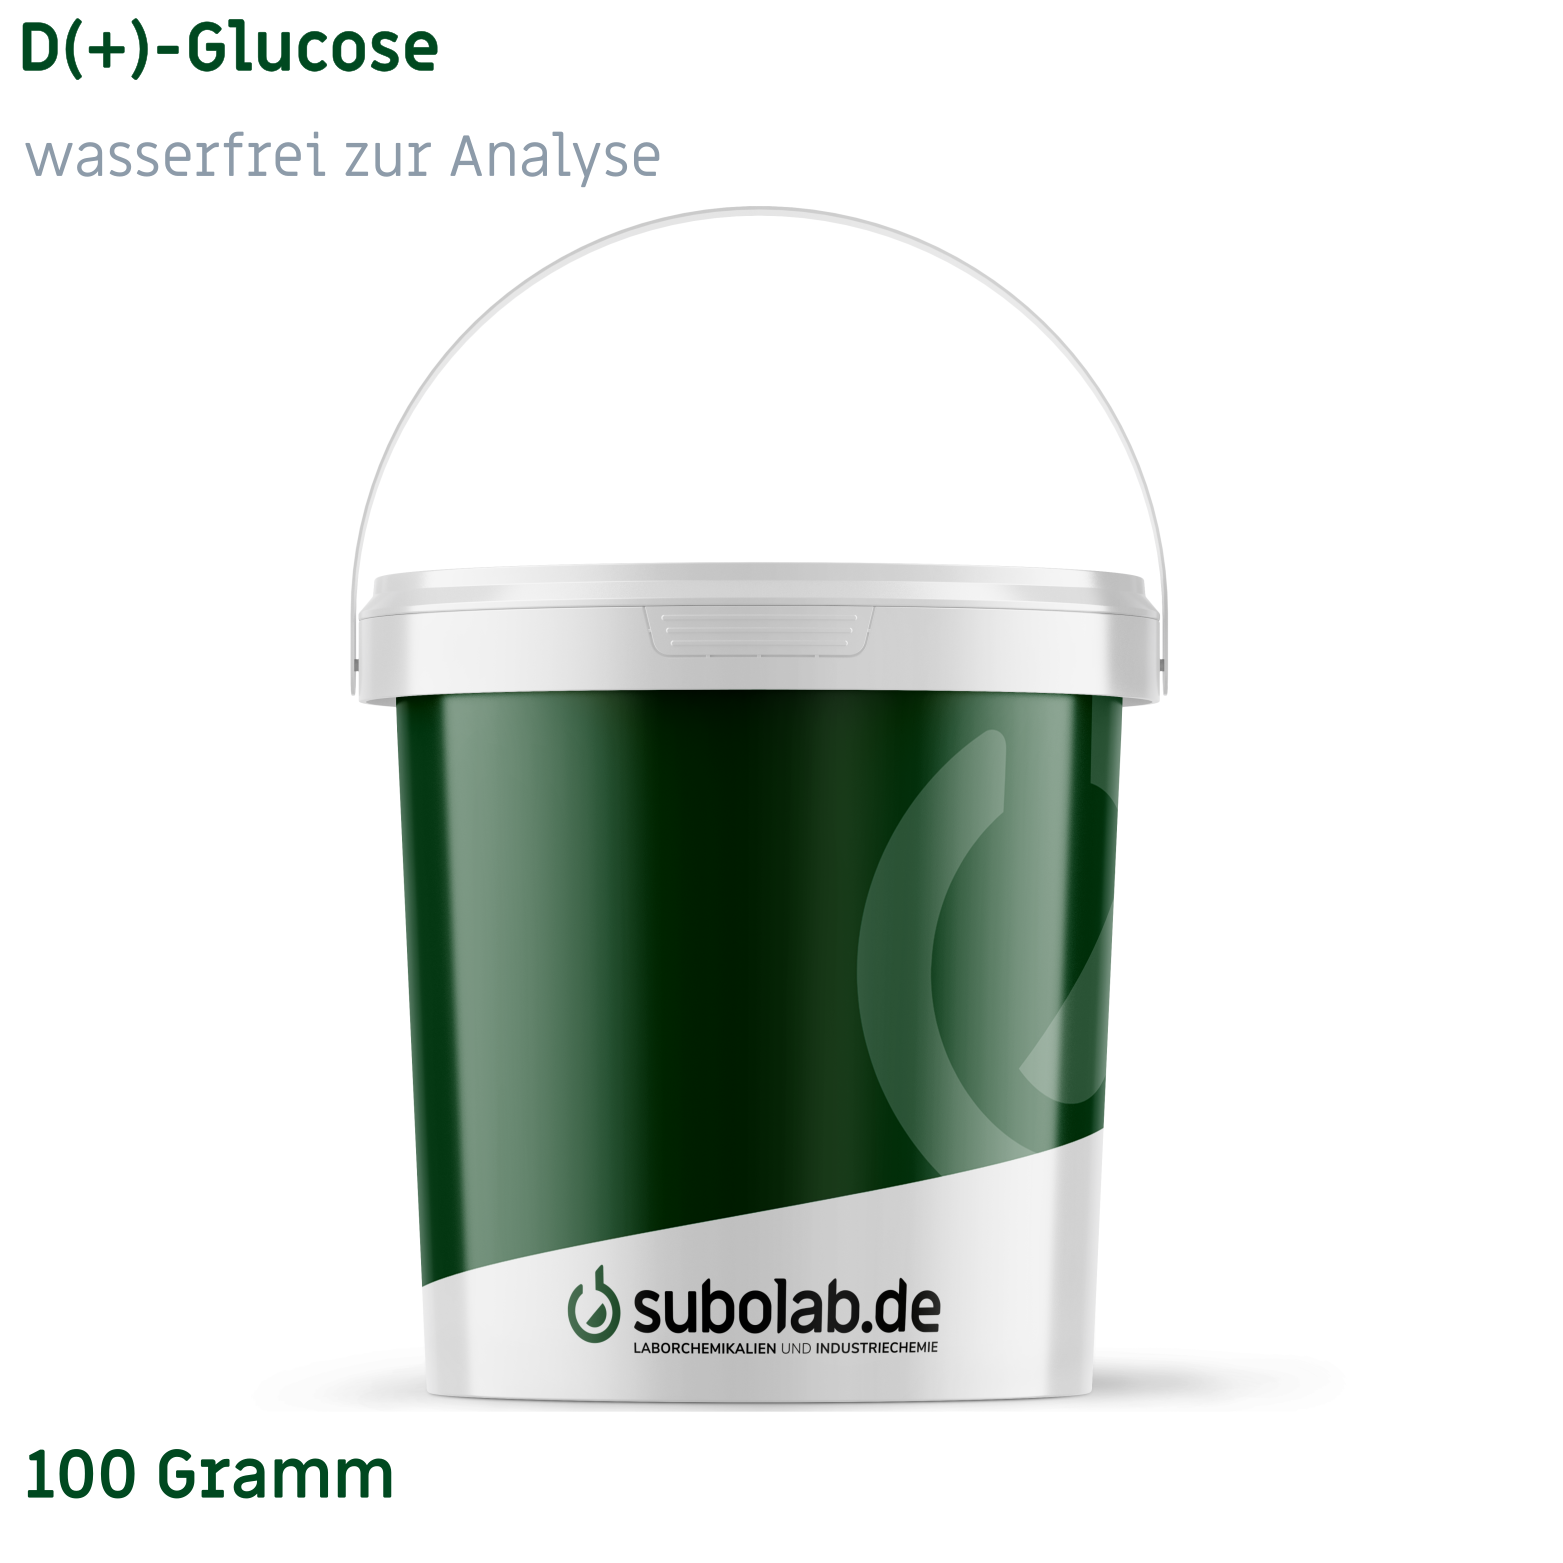 Bild von D(+)-Glucose wasserfrei zur Analyse (100 Gramm)